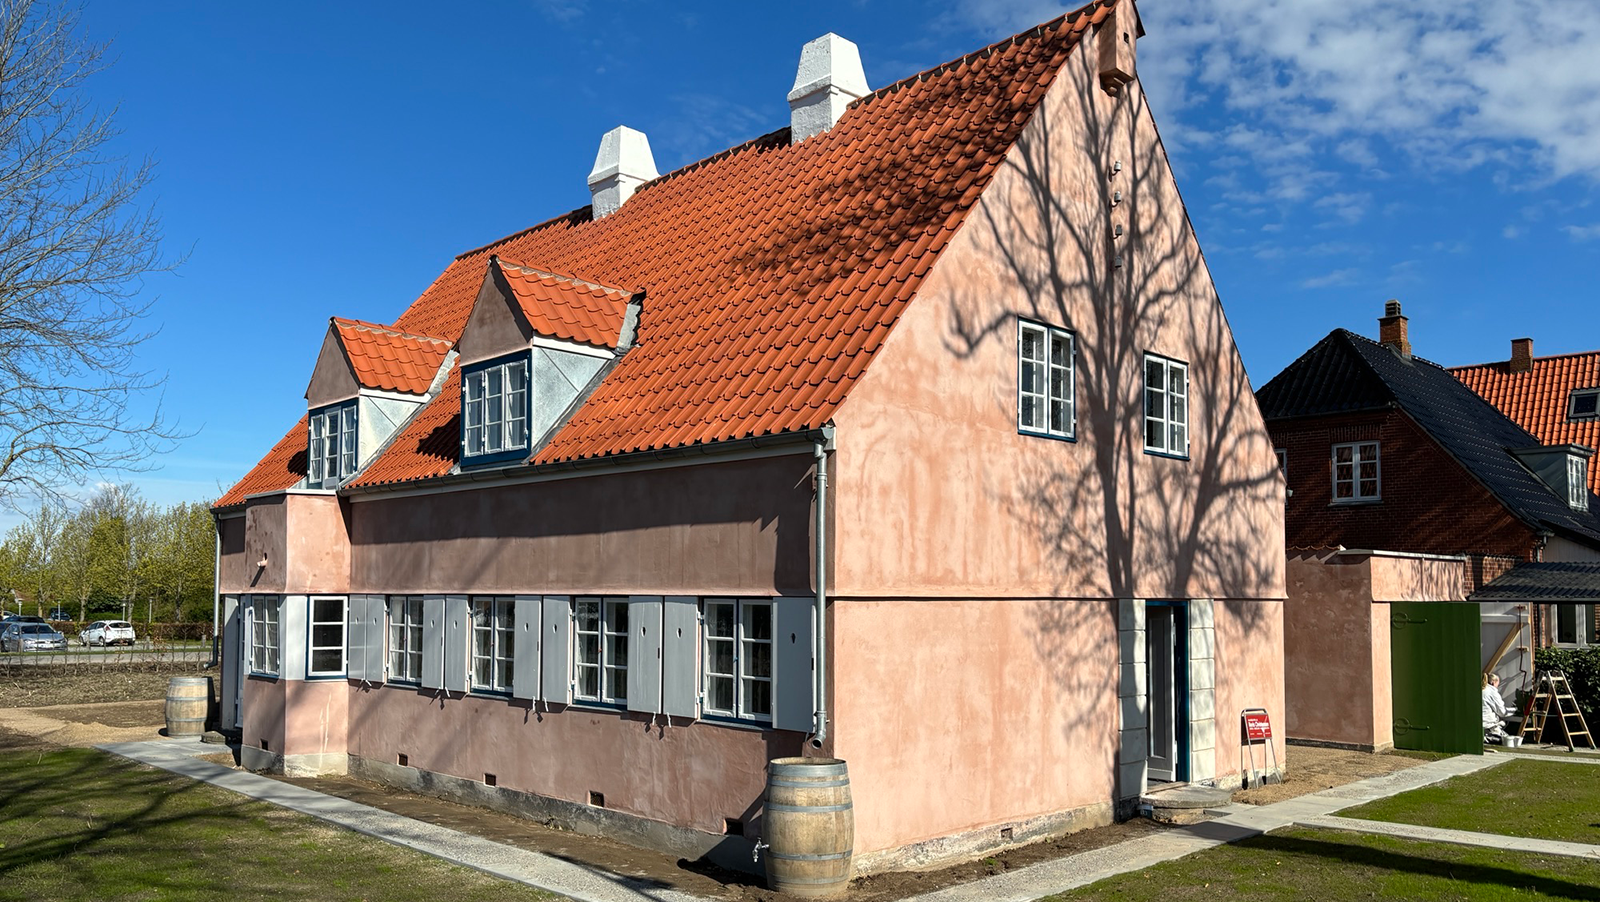 Åbent hus i Ejnar Ørnsholts eget hus